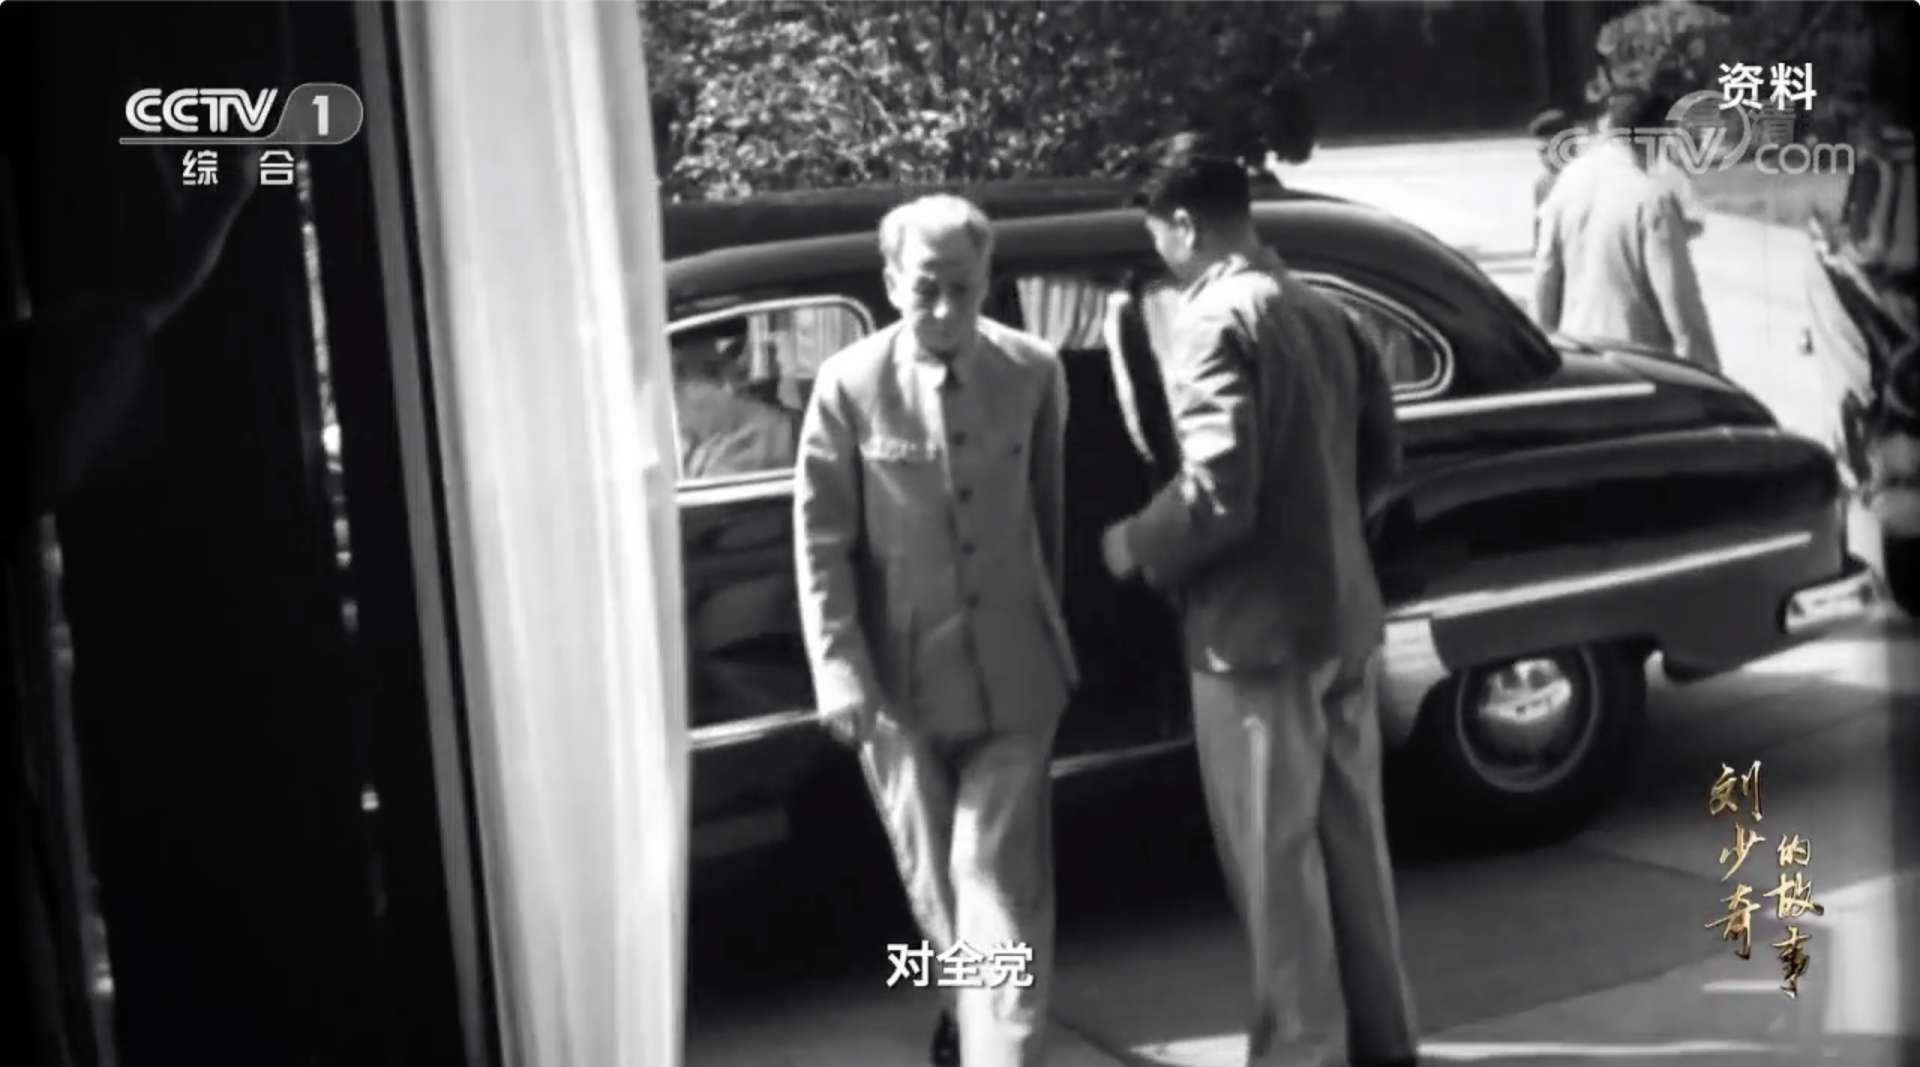 六集纪录片《刘少奇的故事》第一集 学习求索